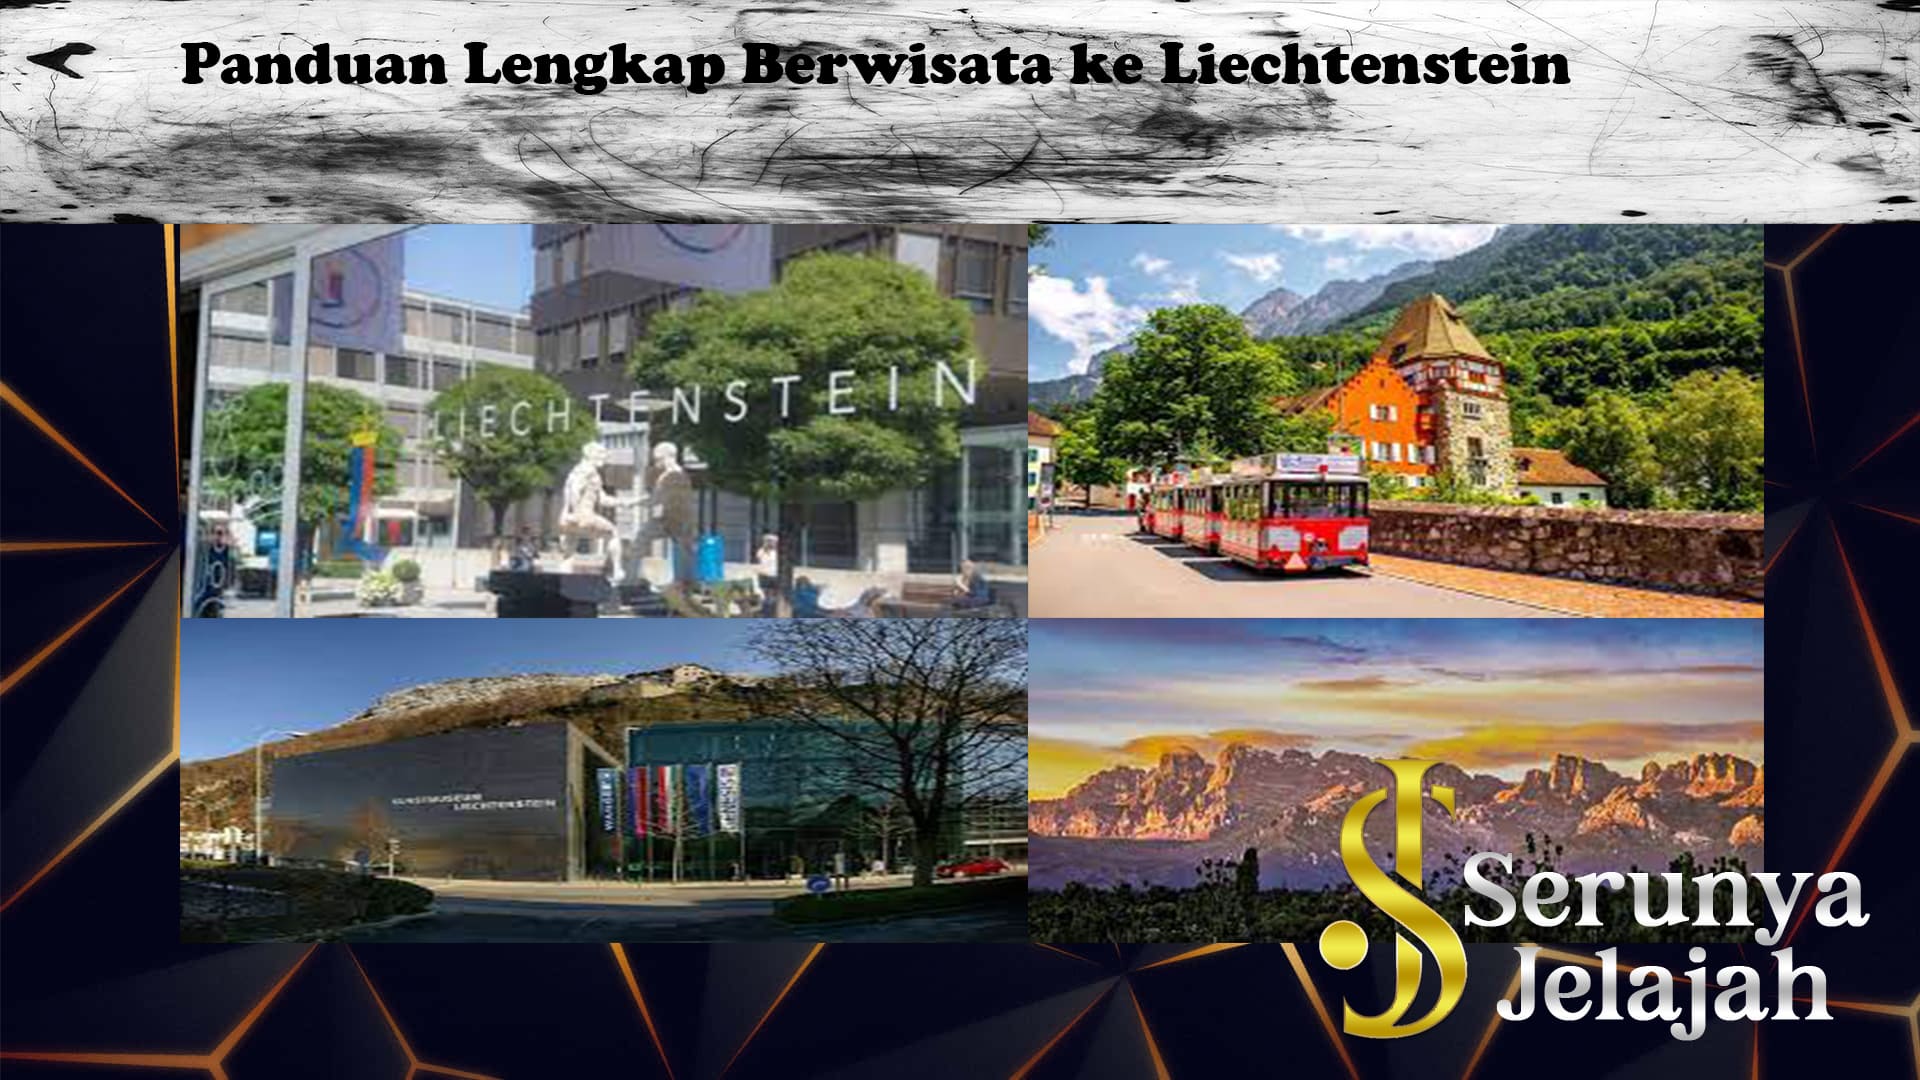 Panduan Lengkap Berwisata ke Liechtenstein